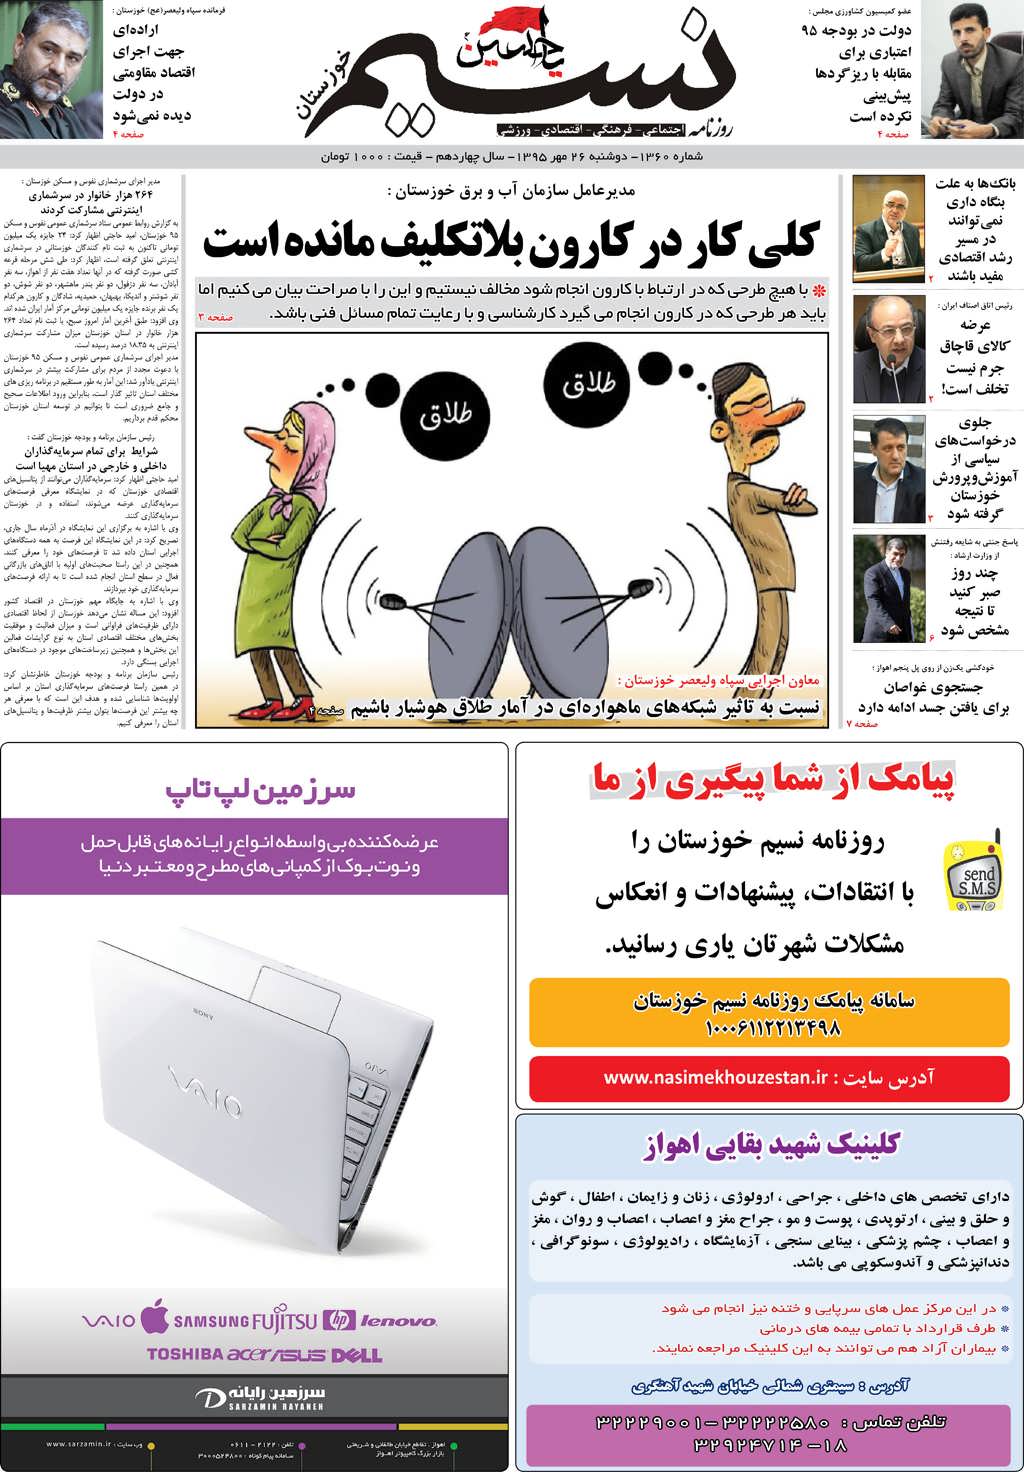 صفحه اصلی روزنامه نسیم شماره 1360